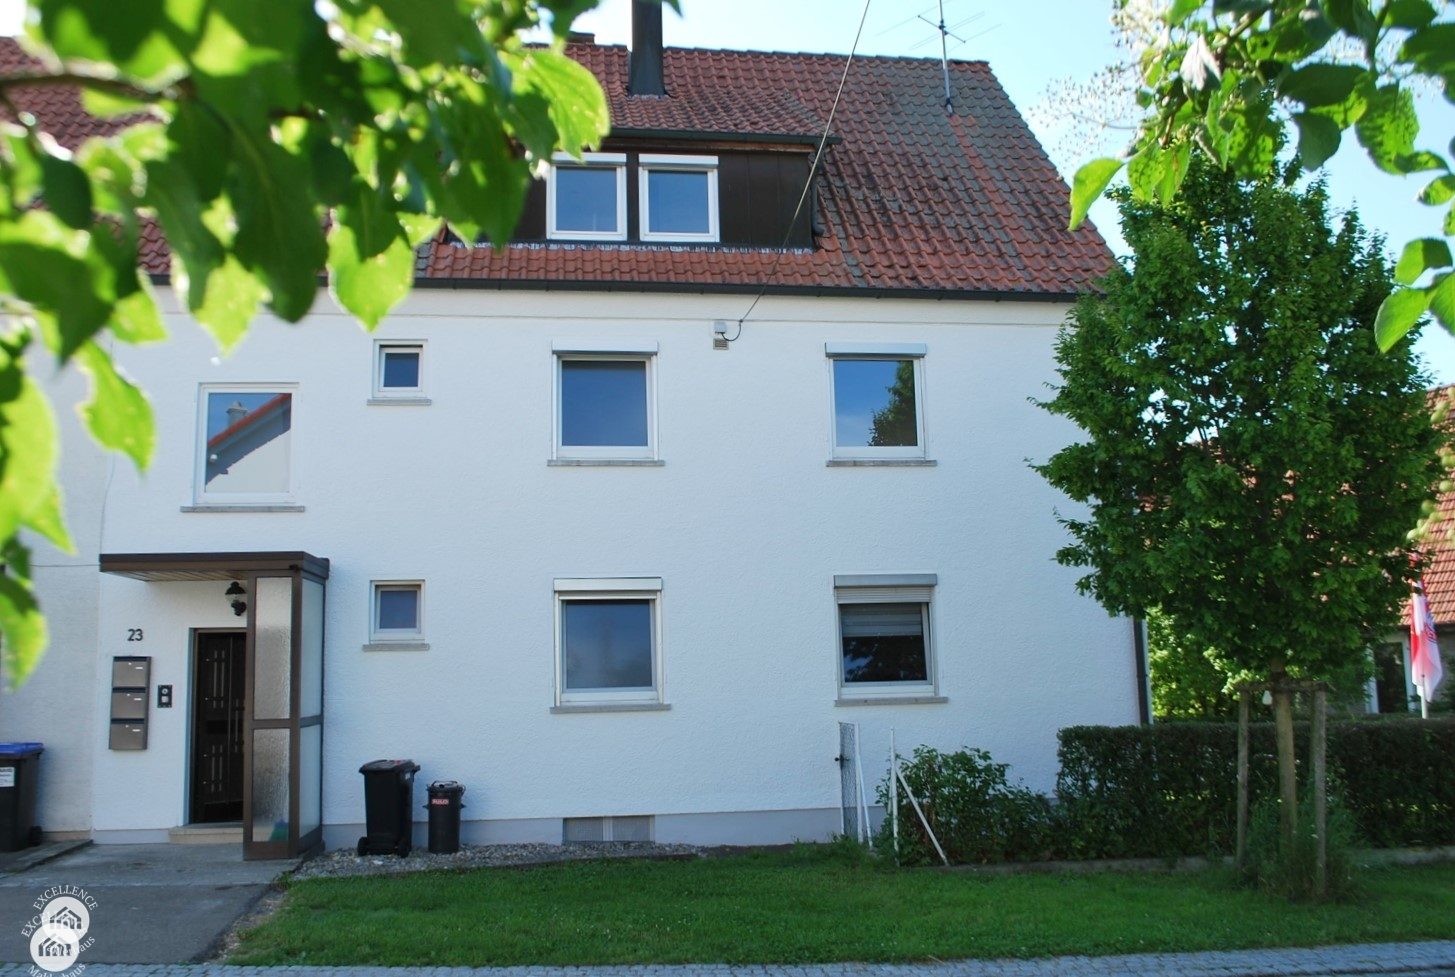 Immobilienangebot - Ulm / Harthausen - Alle - liebevoll renoviertes Mehrfamilienhaus mit Garten und Garage - direkt neben Ulm-Söflingen